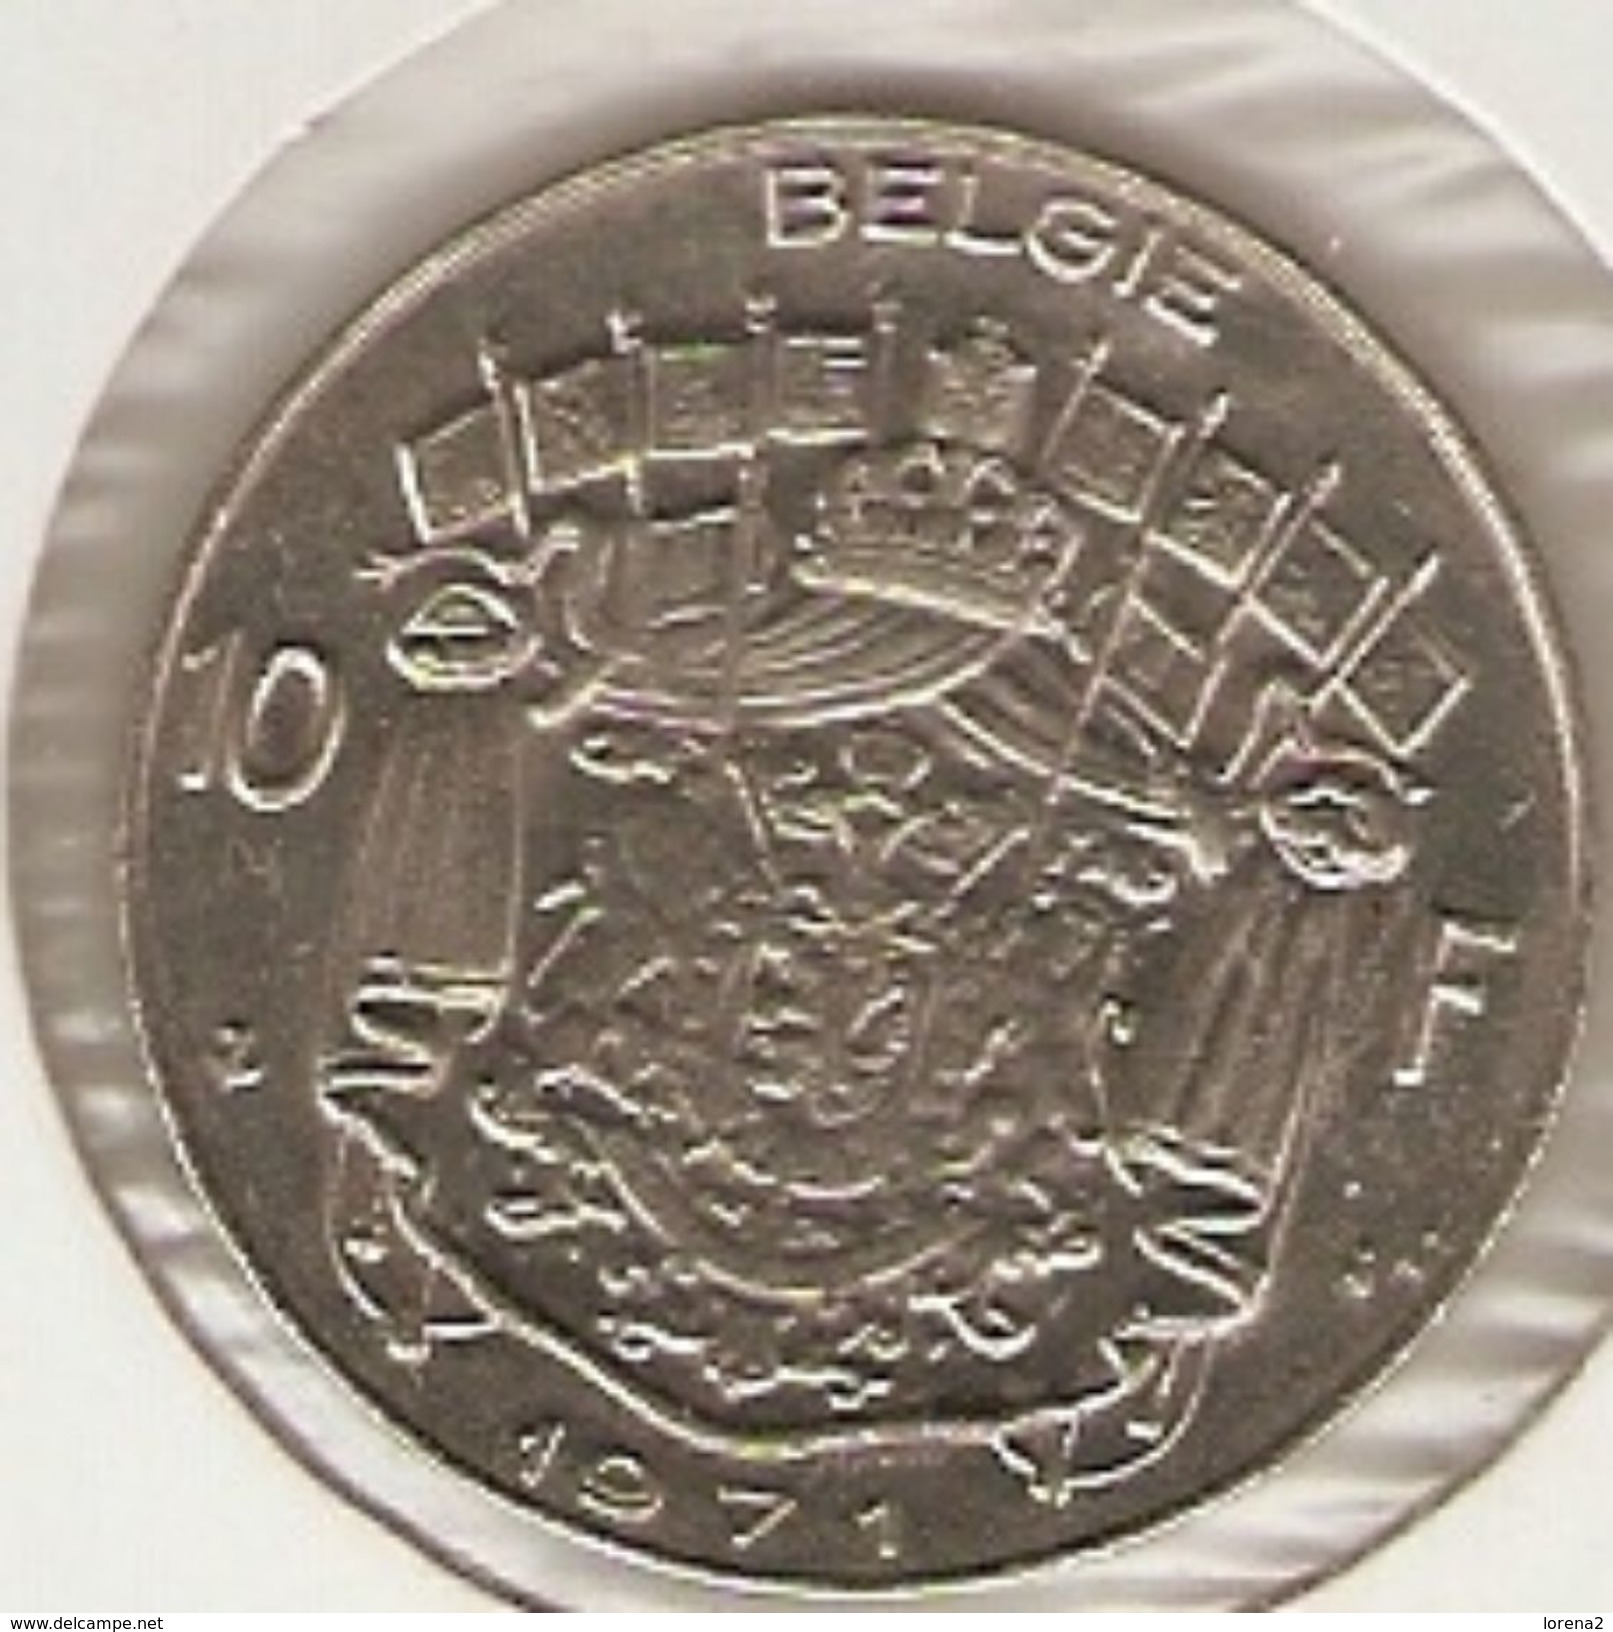 Moneda Bélgica. 10 Francos 1971. MBC. Ref. 4-belg10f-71 - 10 Francs